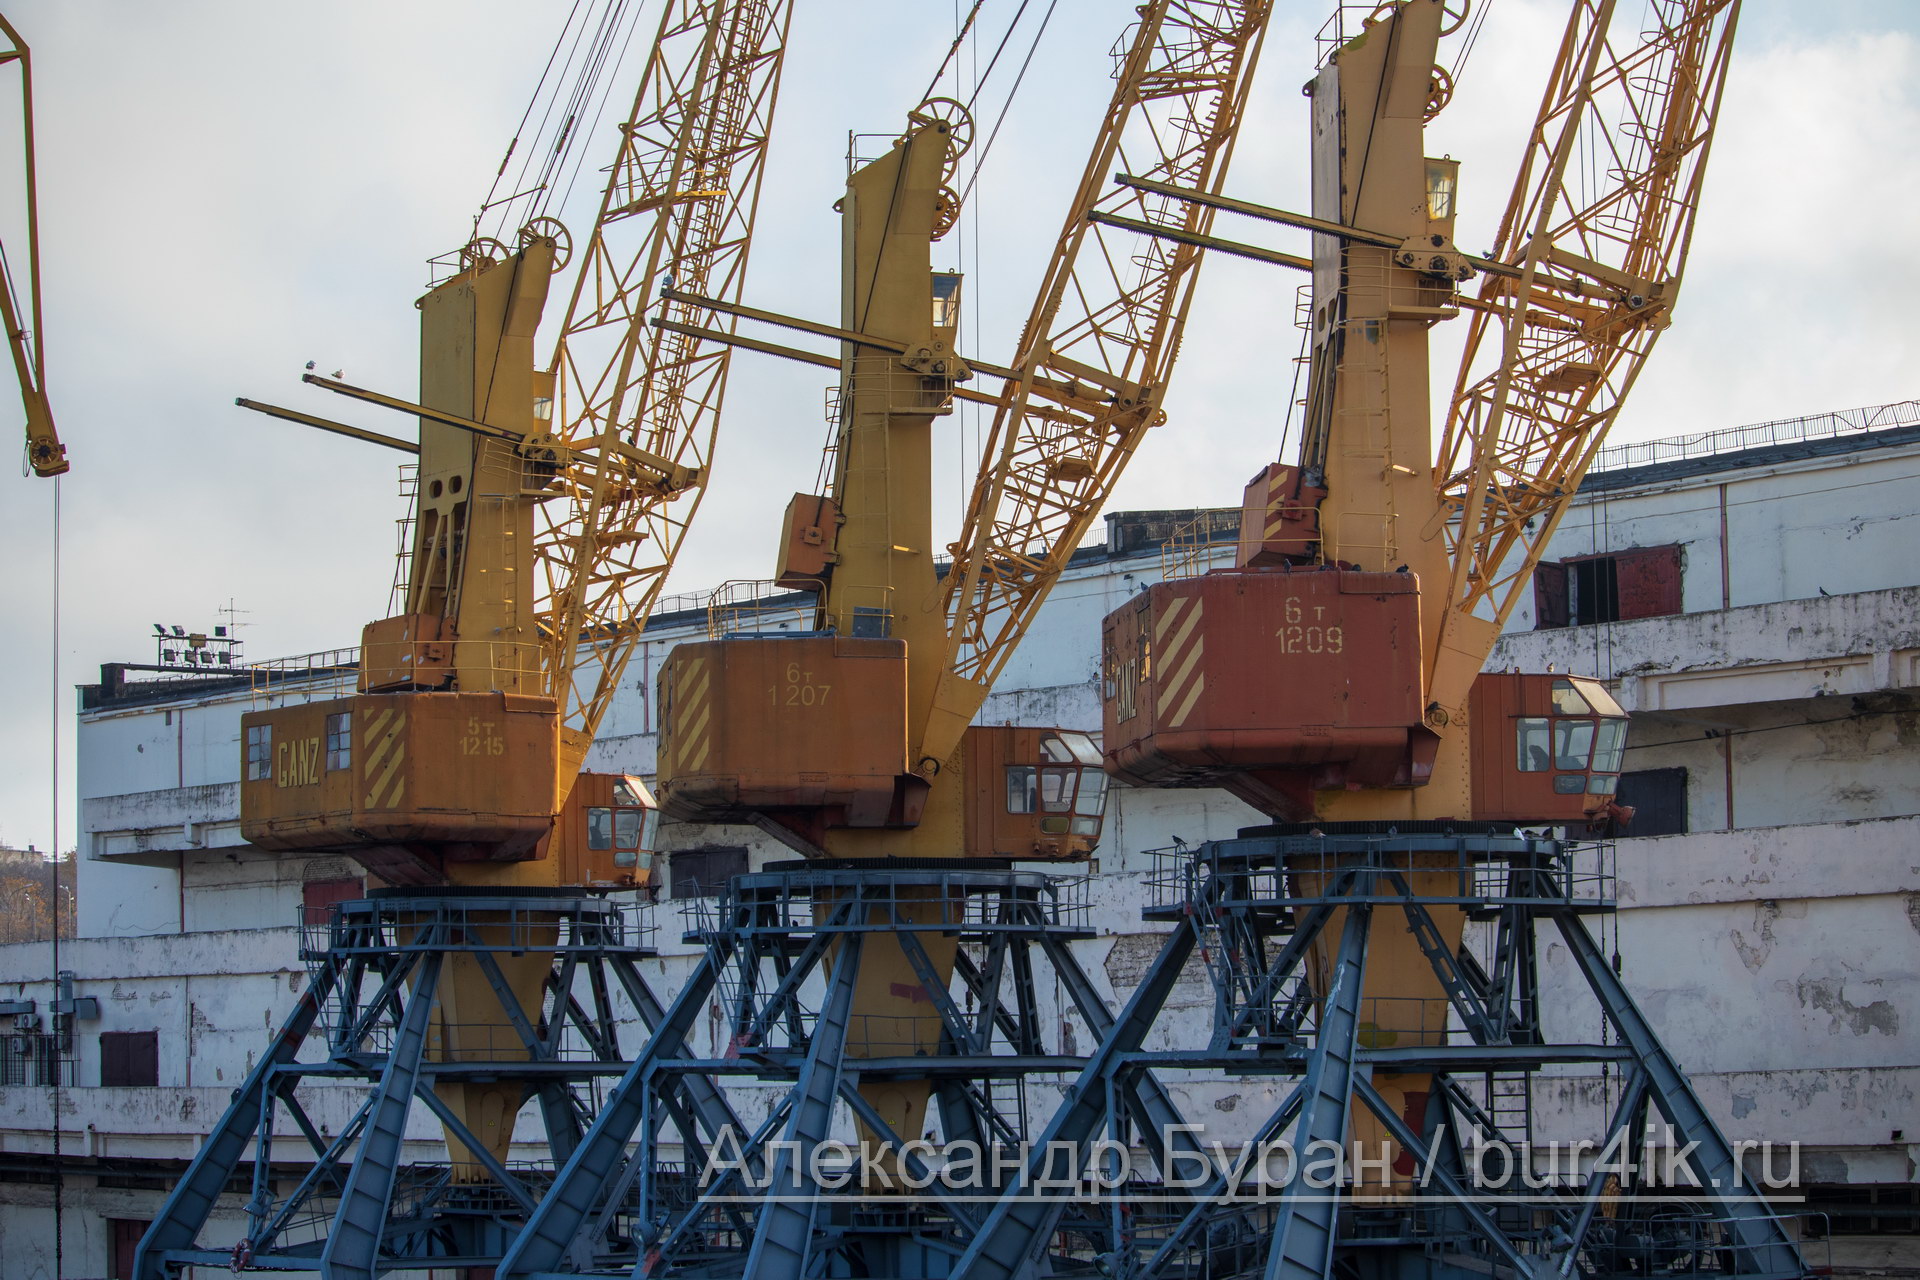 Три желтых грузоподъемных кранов в порт для разгрузки кораблей - Украина, Одесса, 09,11,2019